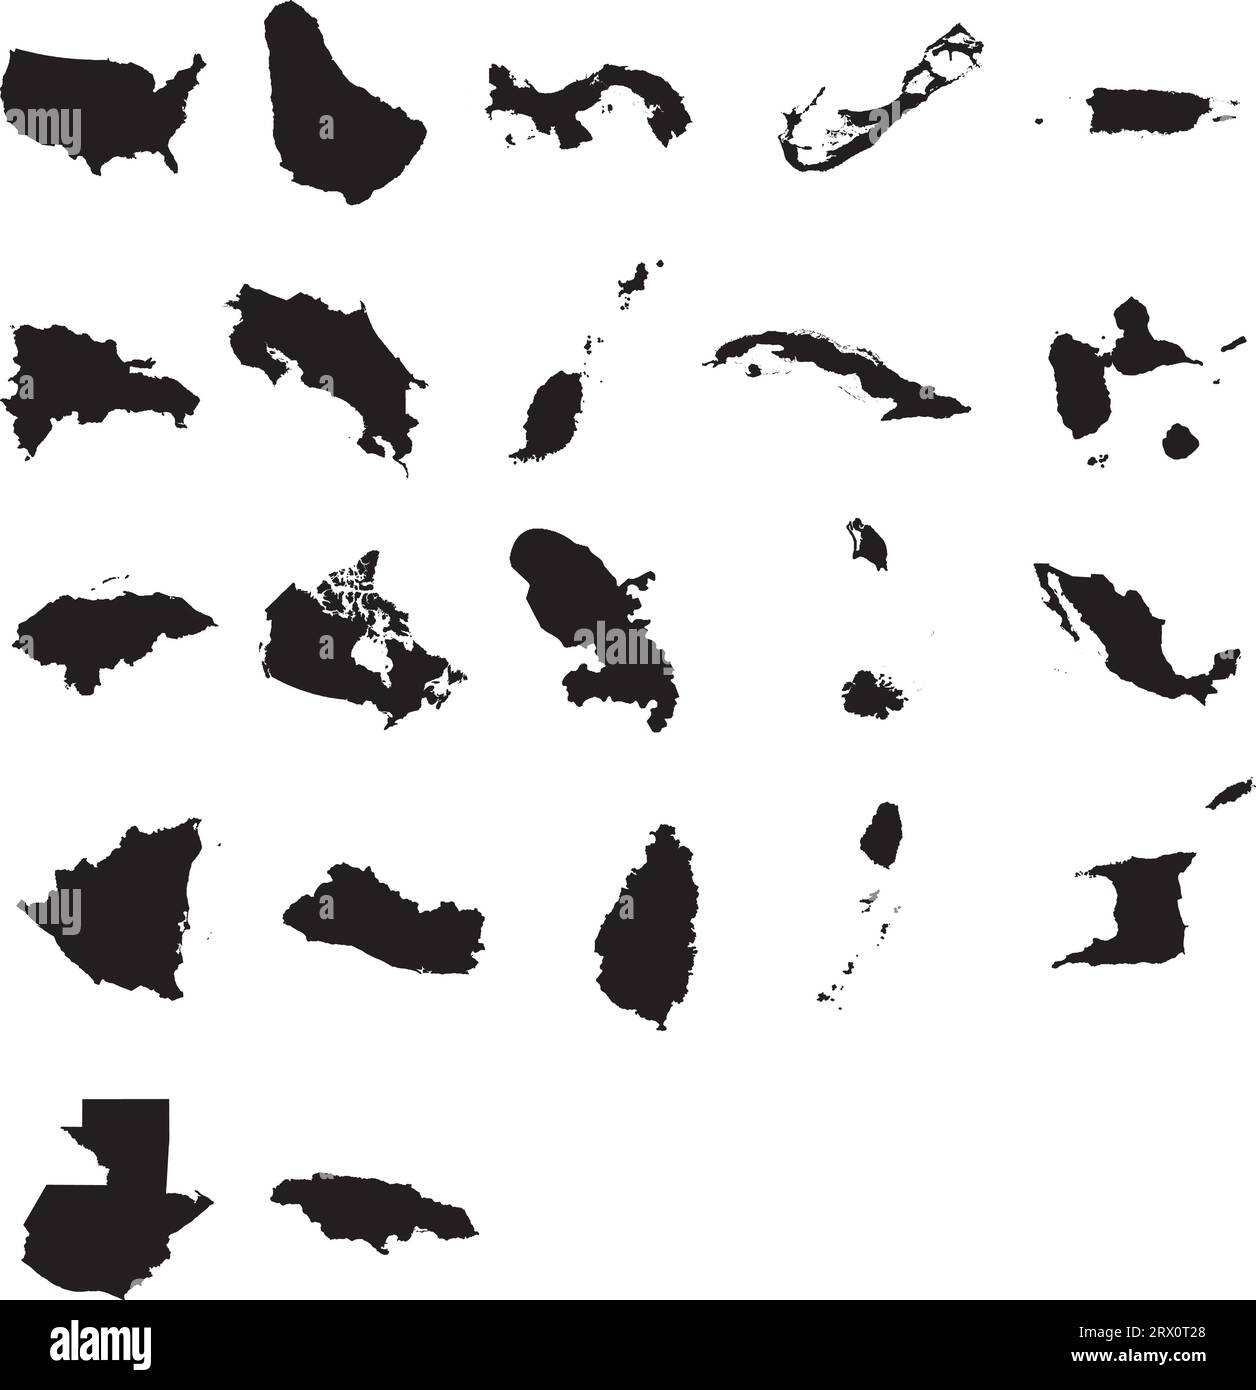 Carte d'illustration vectorielle de 22 pays d'Amérique du Nord. Illustration de Vecteur